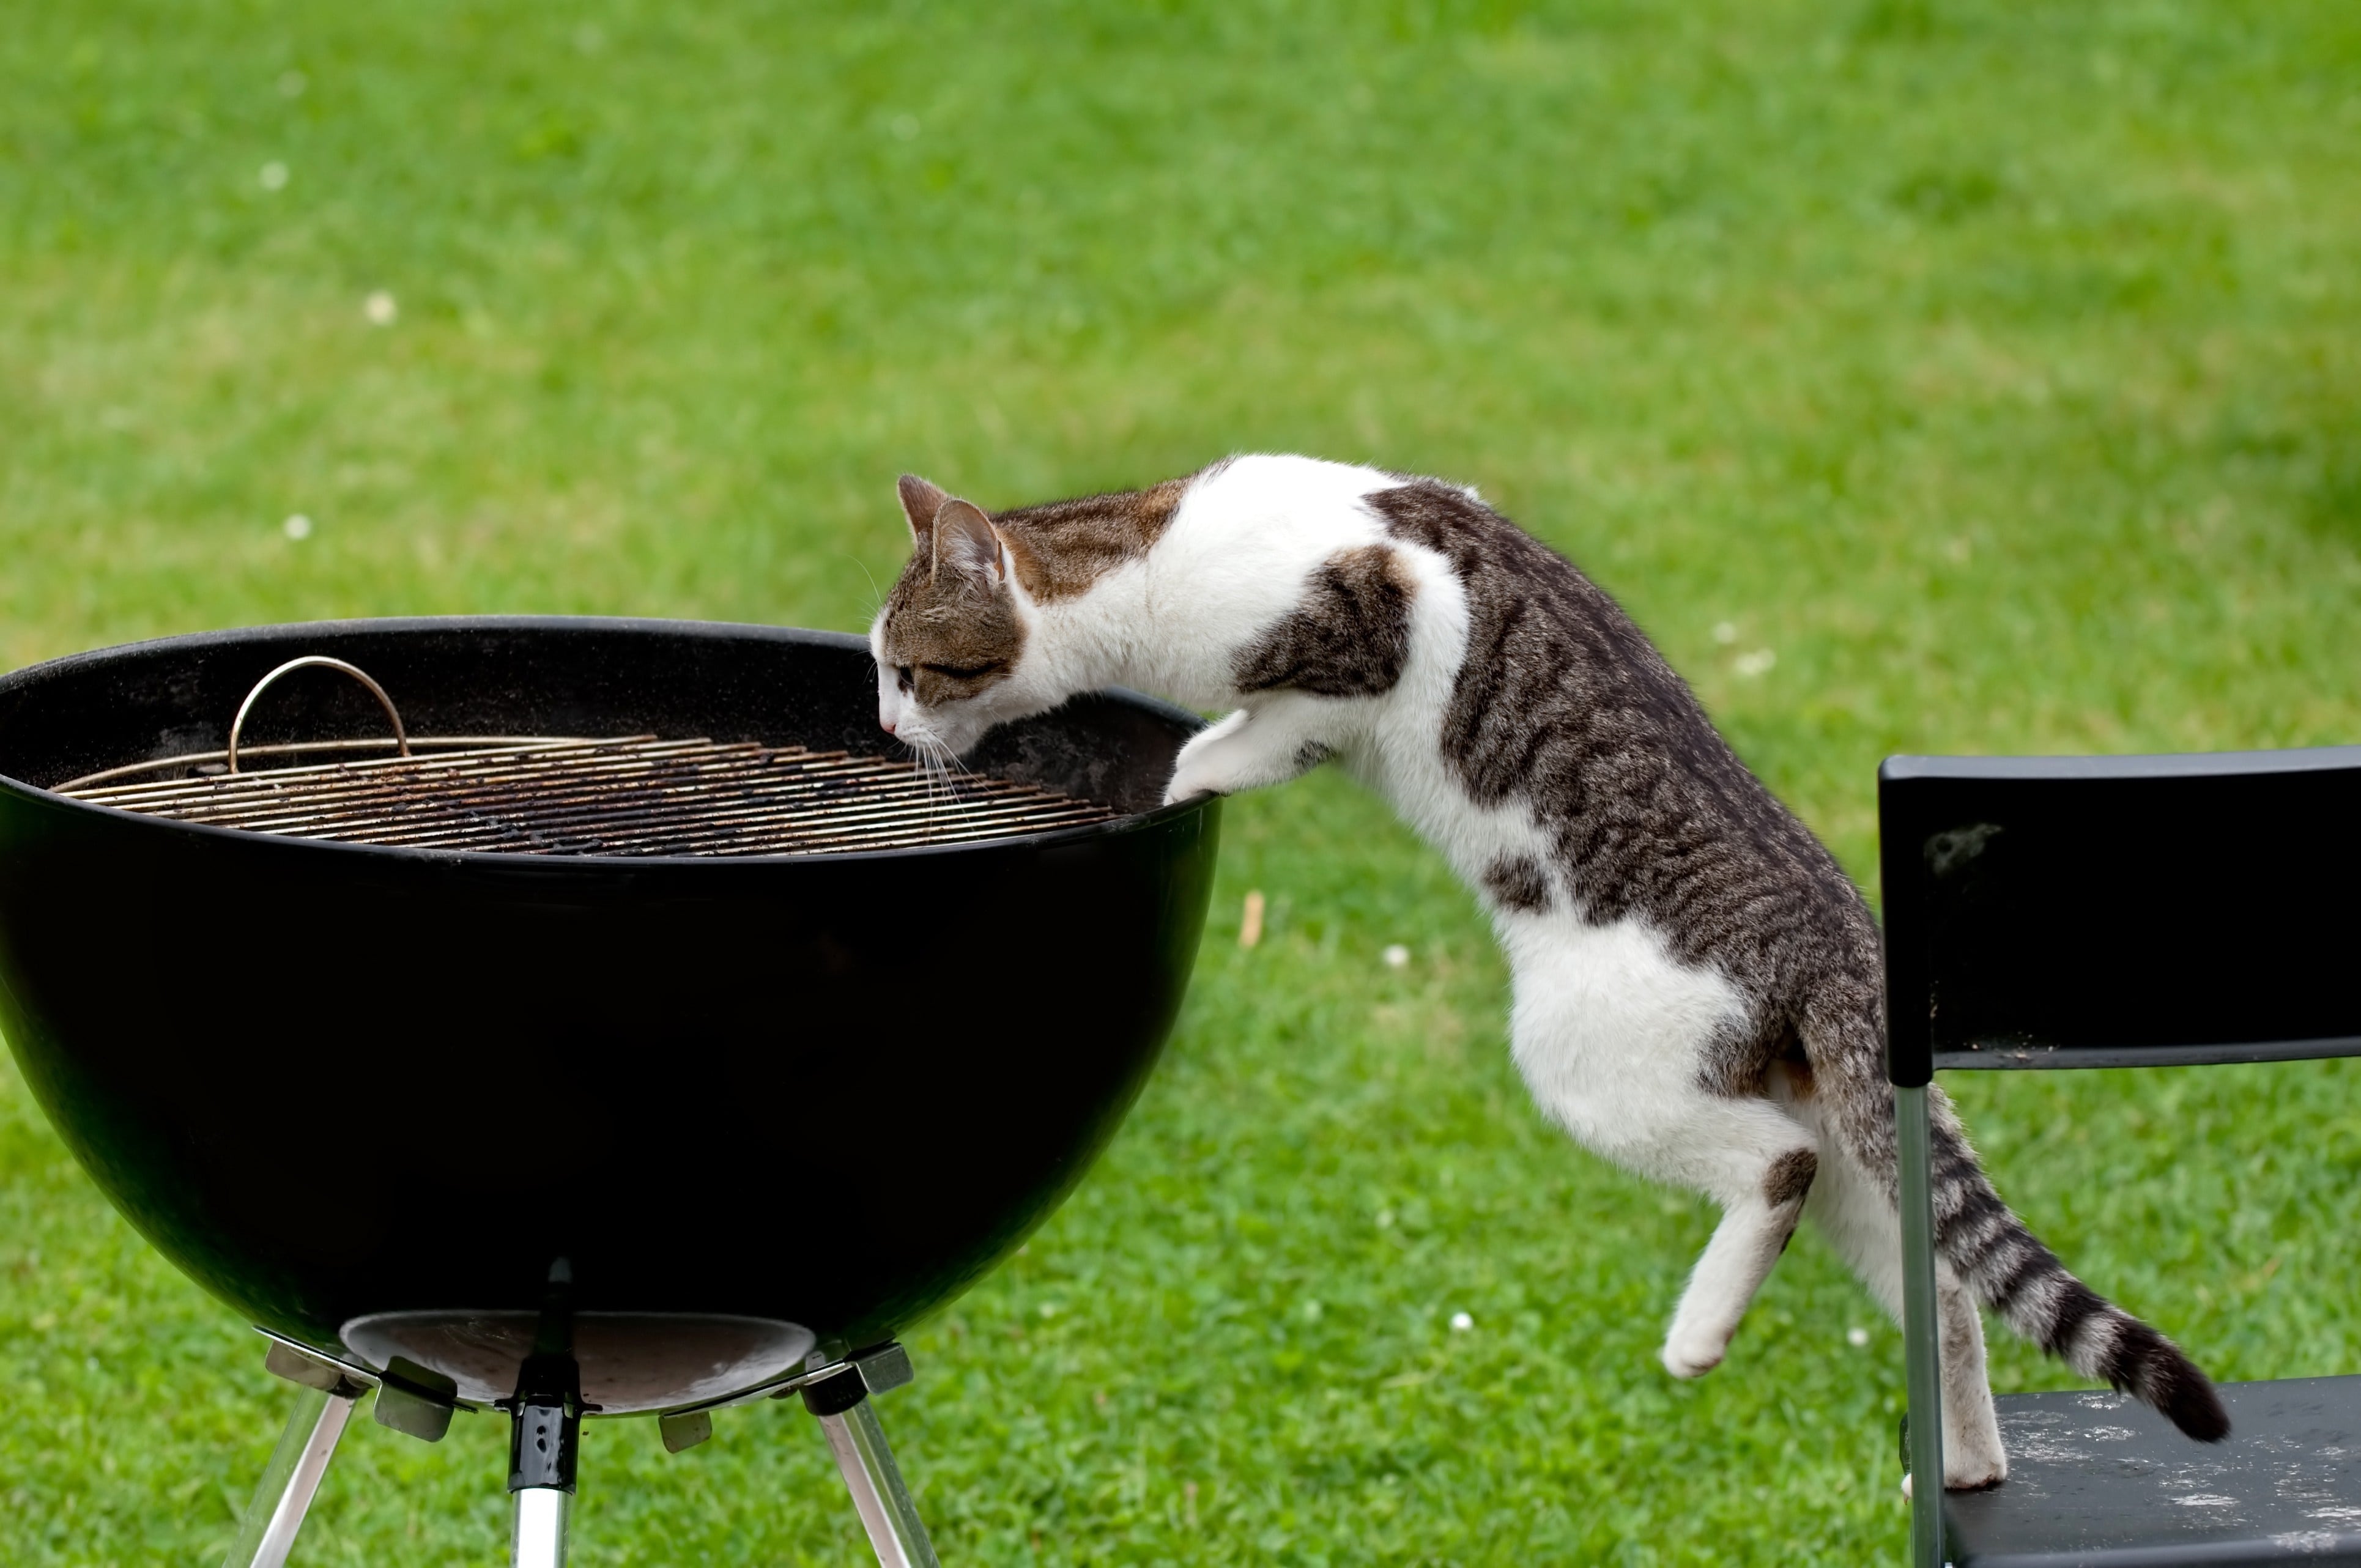 barbecue et danger pour le chat